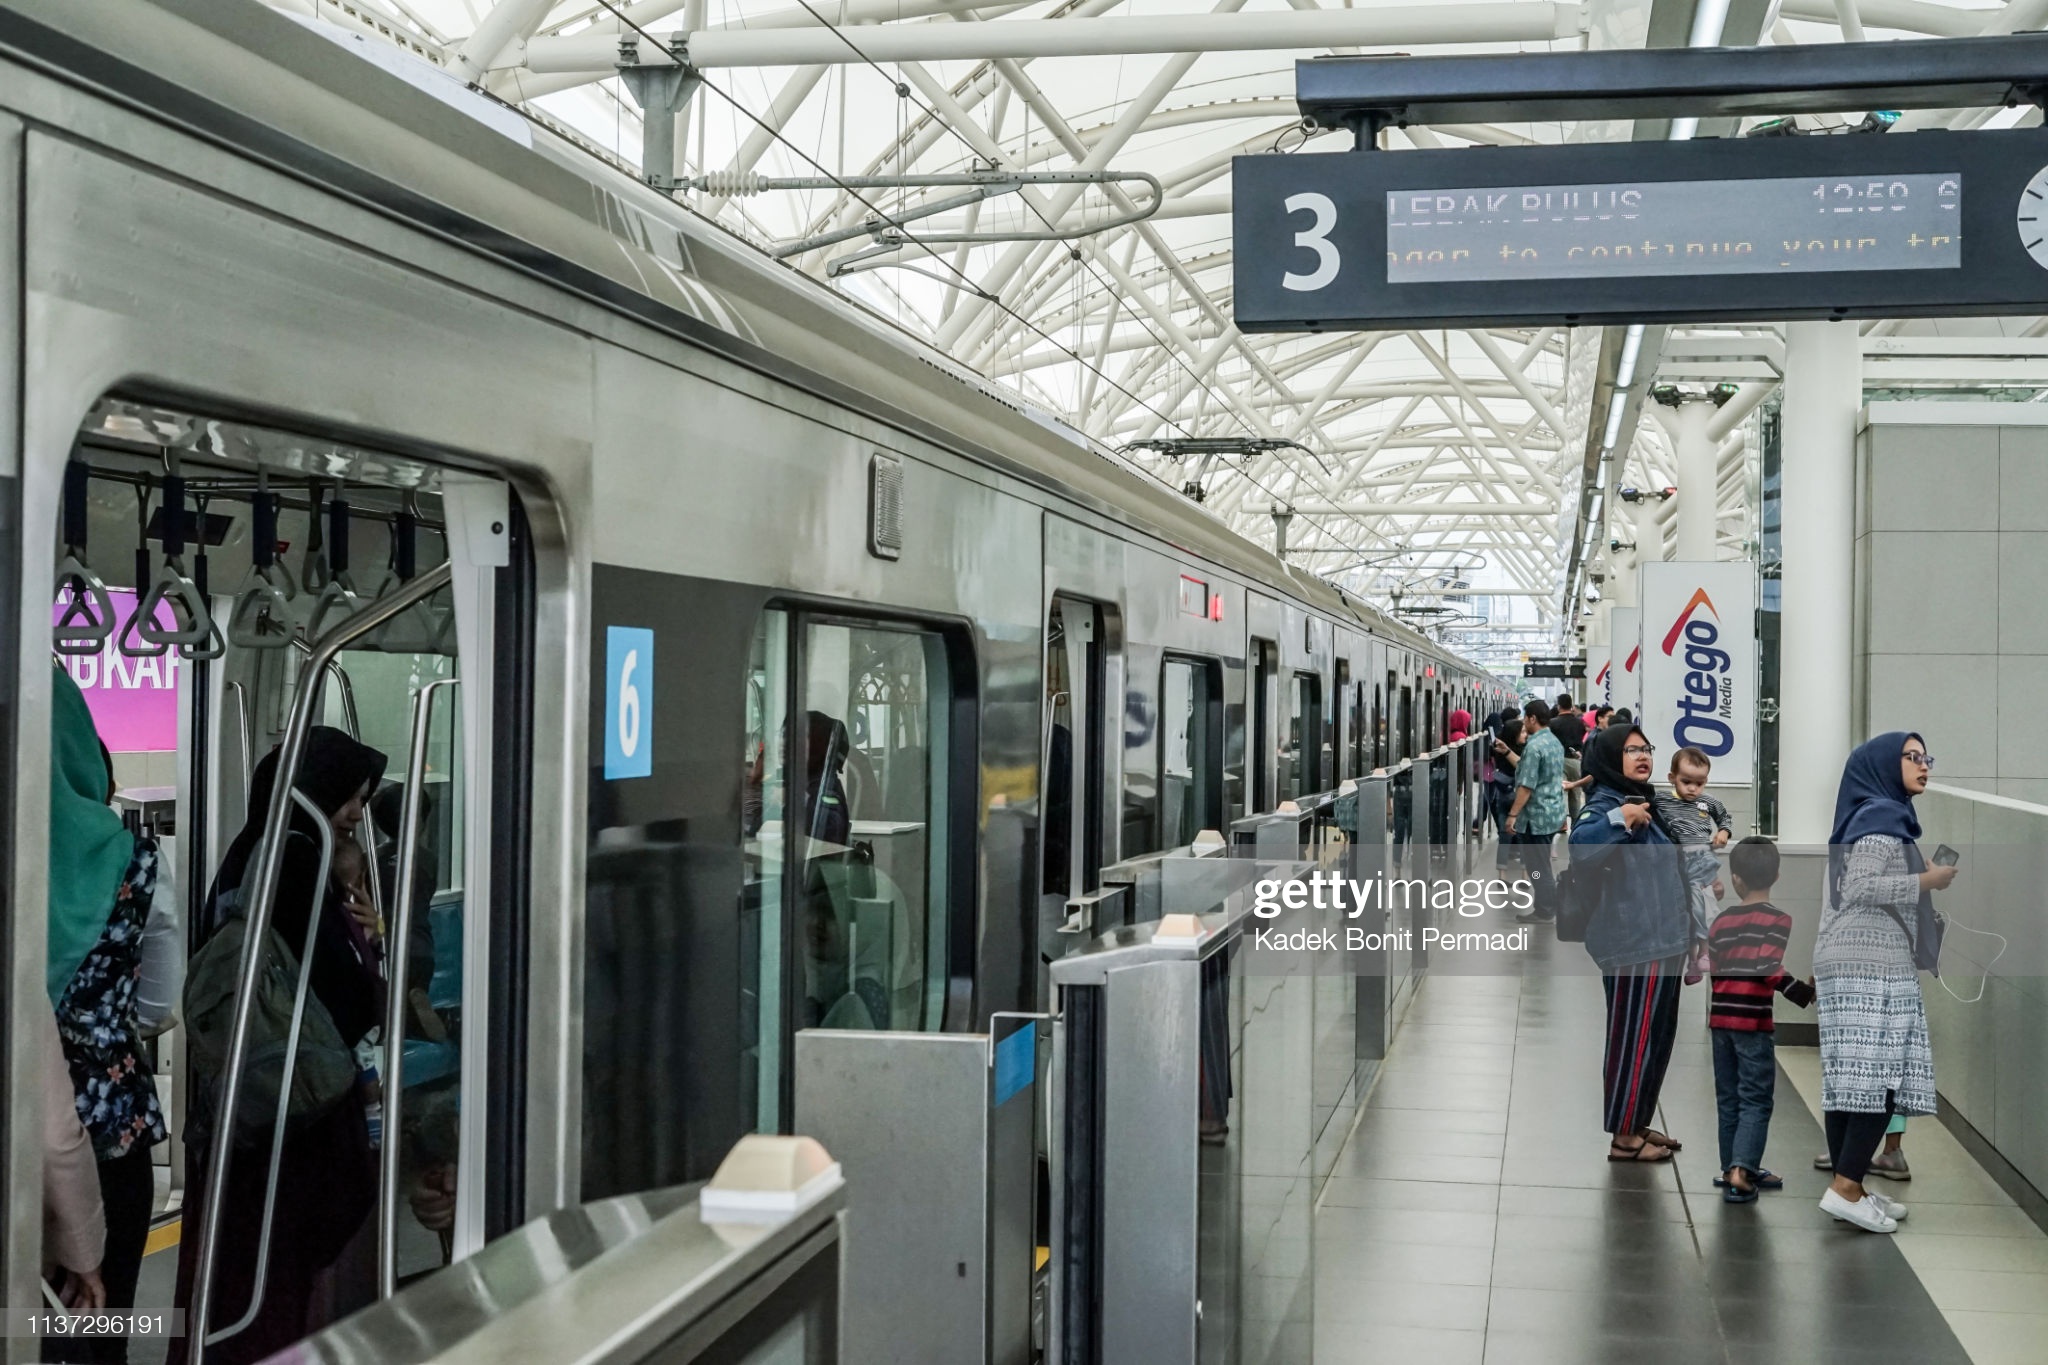 Hệ thống rào chắn an toàn được lắp đặt tại tuyến metro ở Jakarta (Indonesia) trong khi tuyến metro ở Paris (Pháp) không có. Ảnh: Gettyimages.